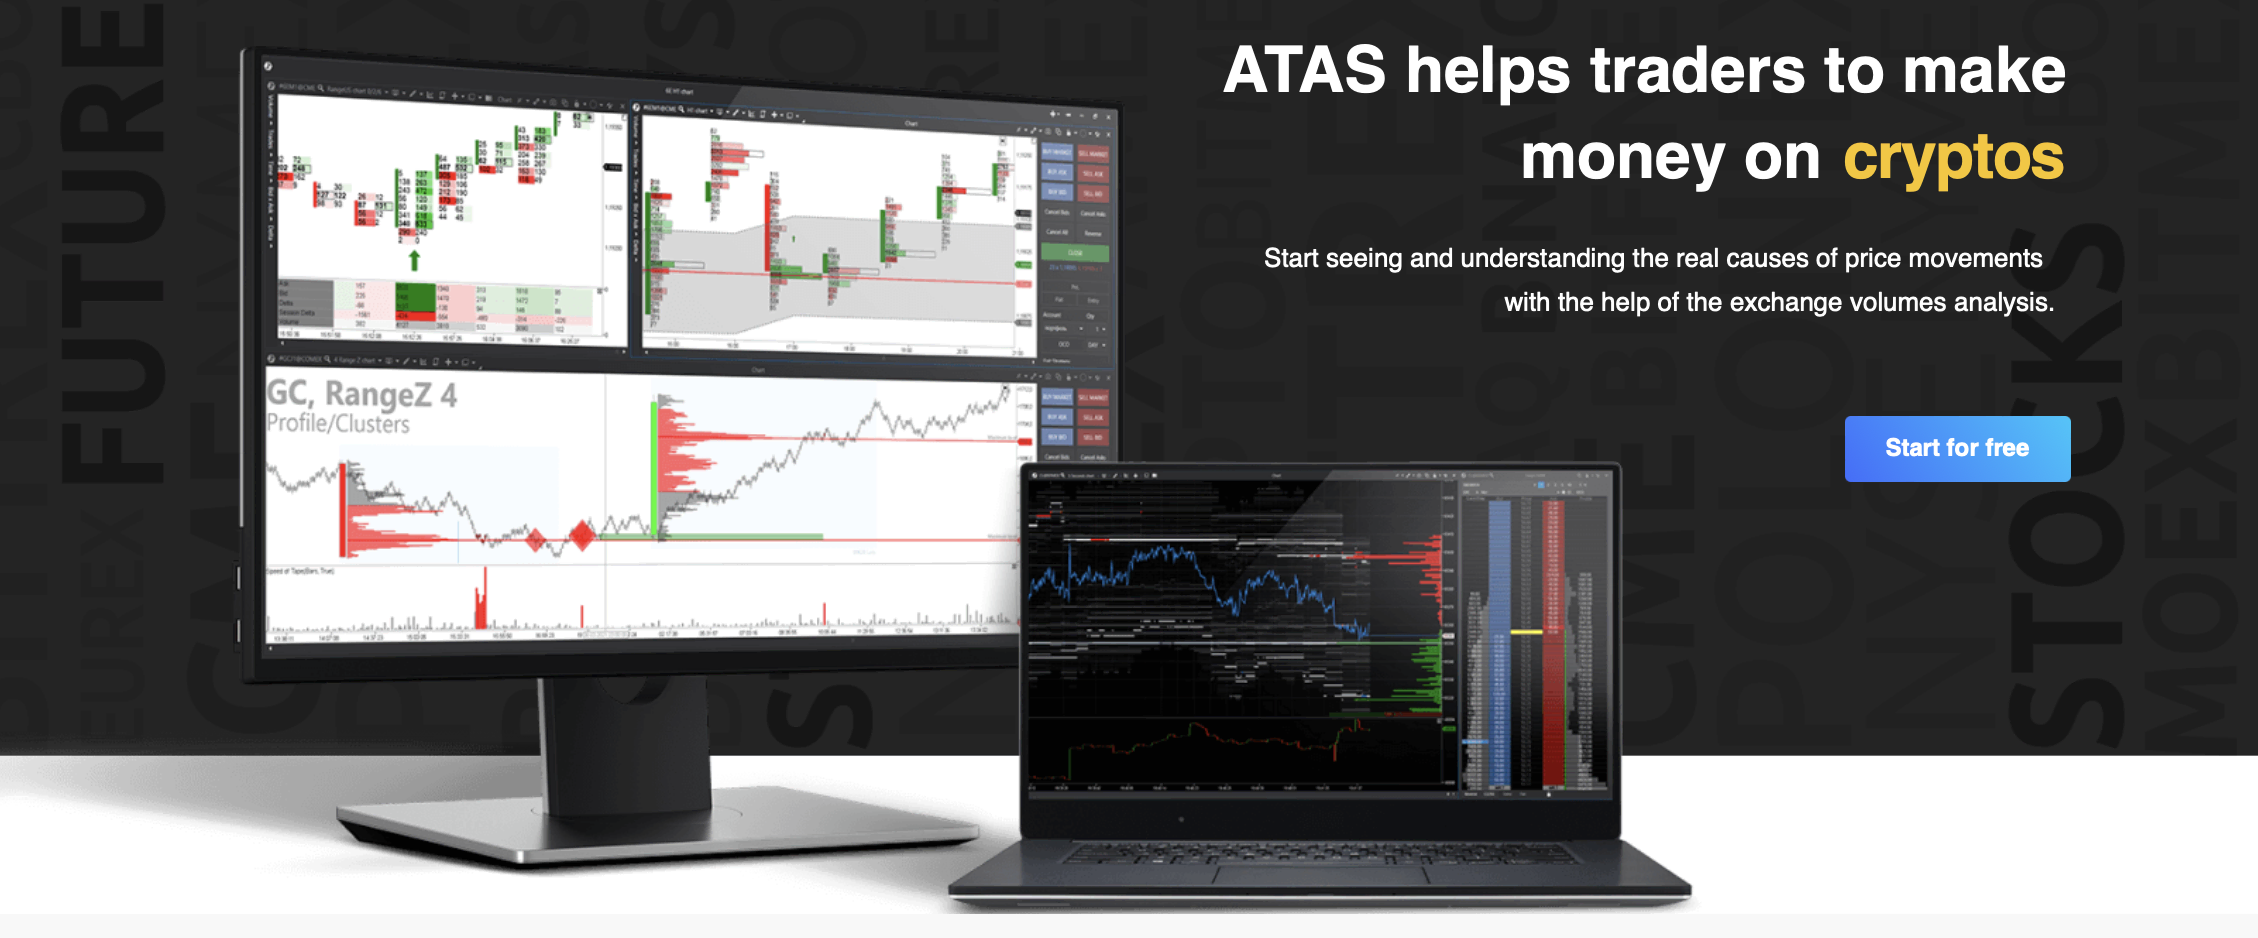 Situs web resmi platform perdagangan ATAS